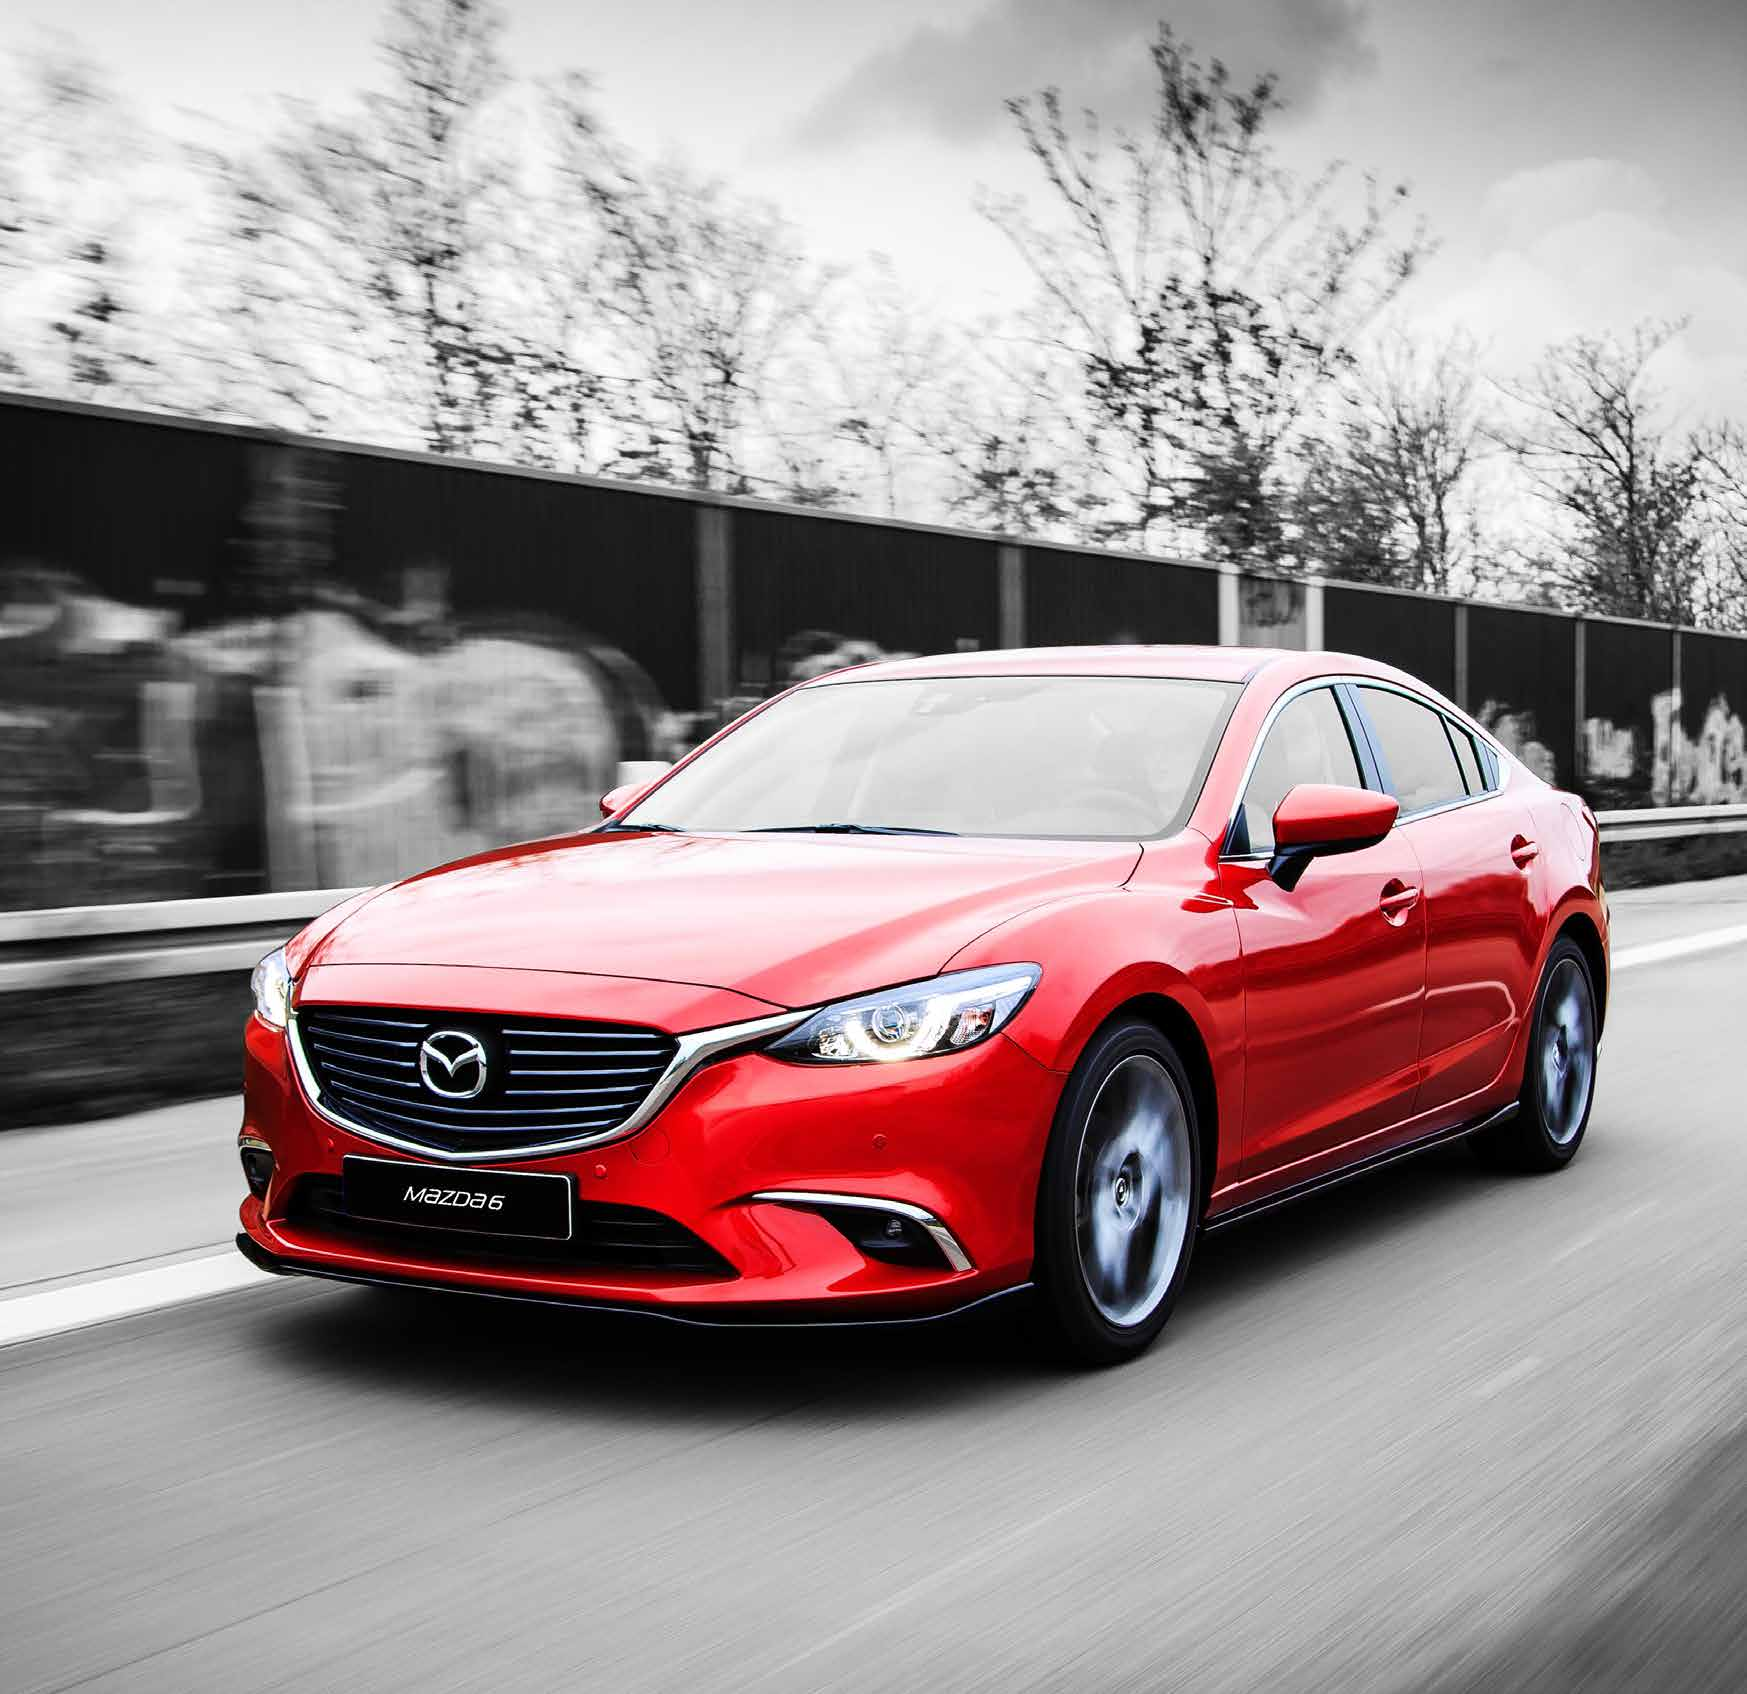 BIS INS KLEINSTE DETAIL Mit dem Mazda6 * erleben Sie Fahrspaß, Design und effiziente Technologien in perfekter Kombination.